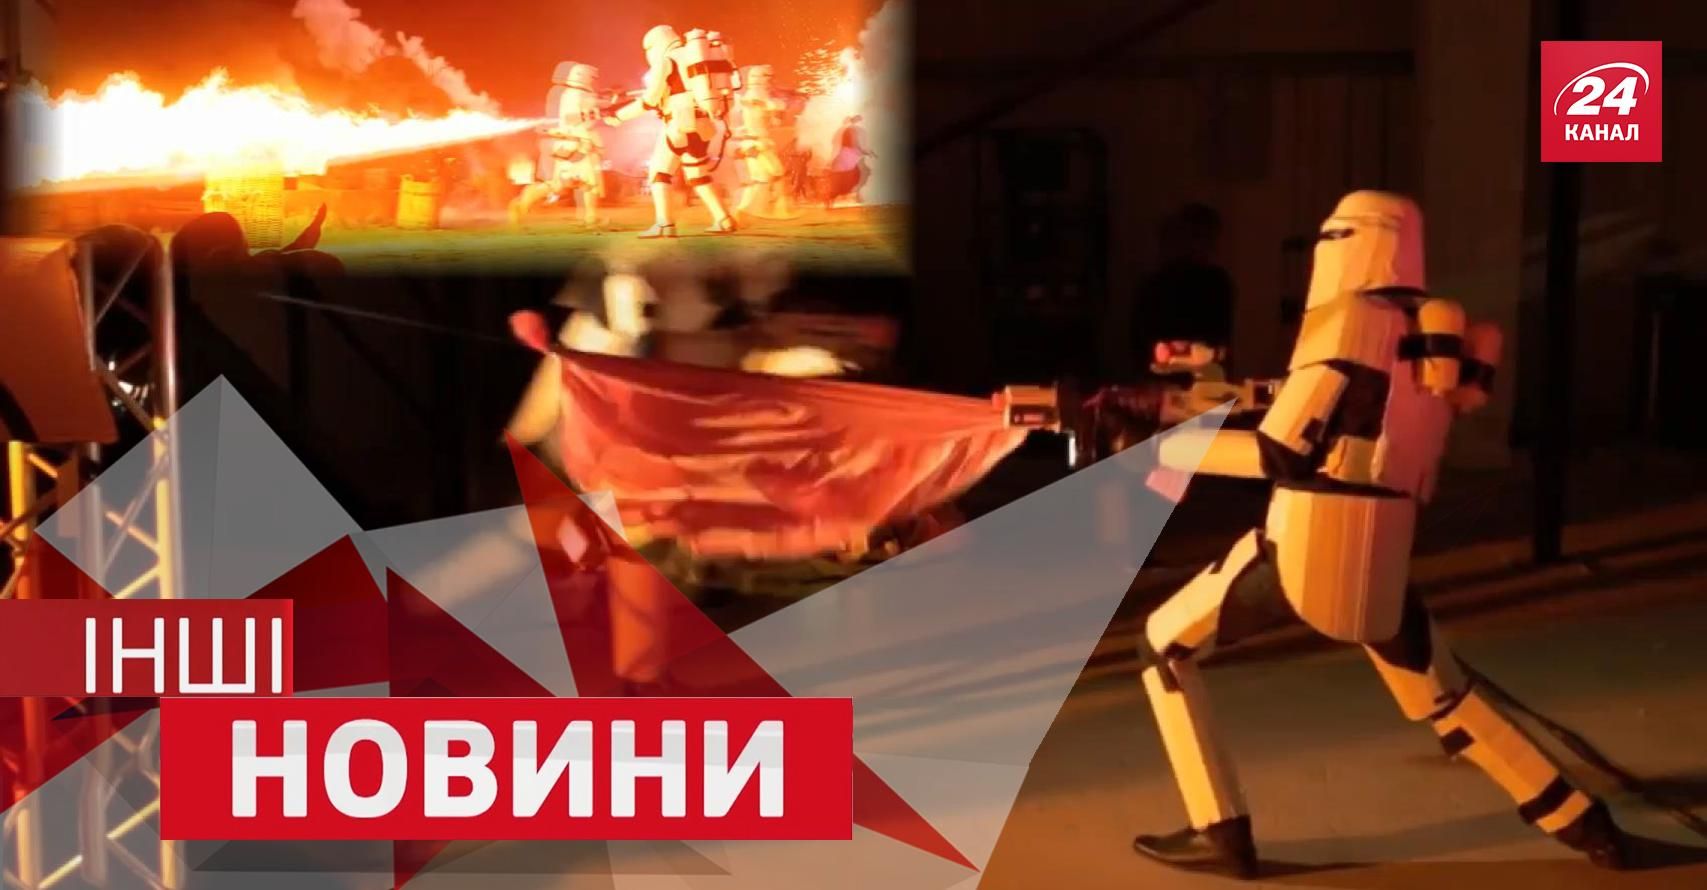 ДРУГИЕ новости. Цирковой трюк от Долгополова, новый трейлер "Звездных войн"